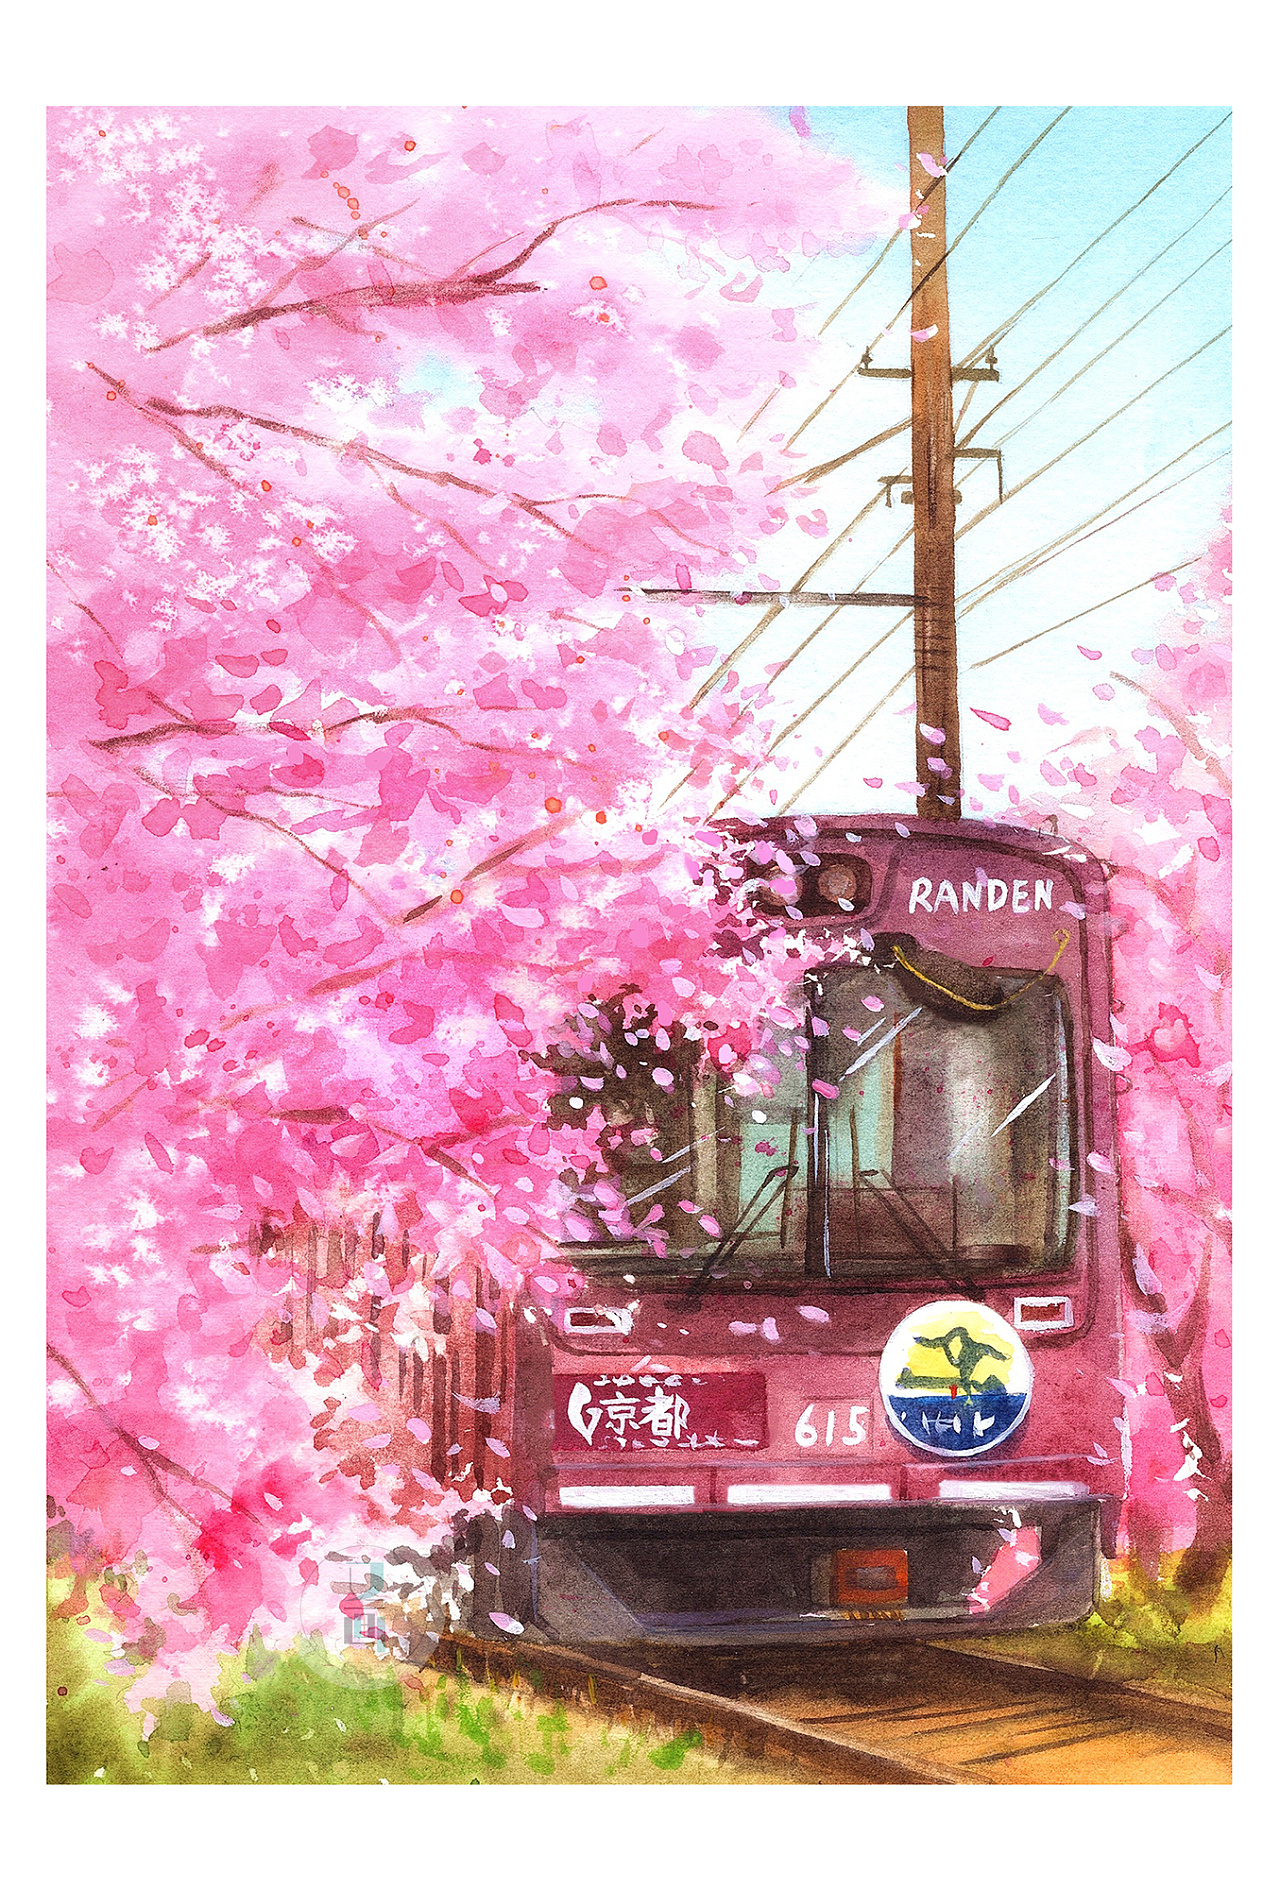 樱花风景画马克笔图片